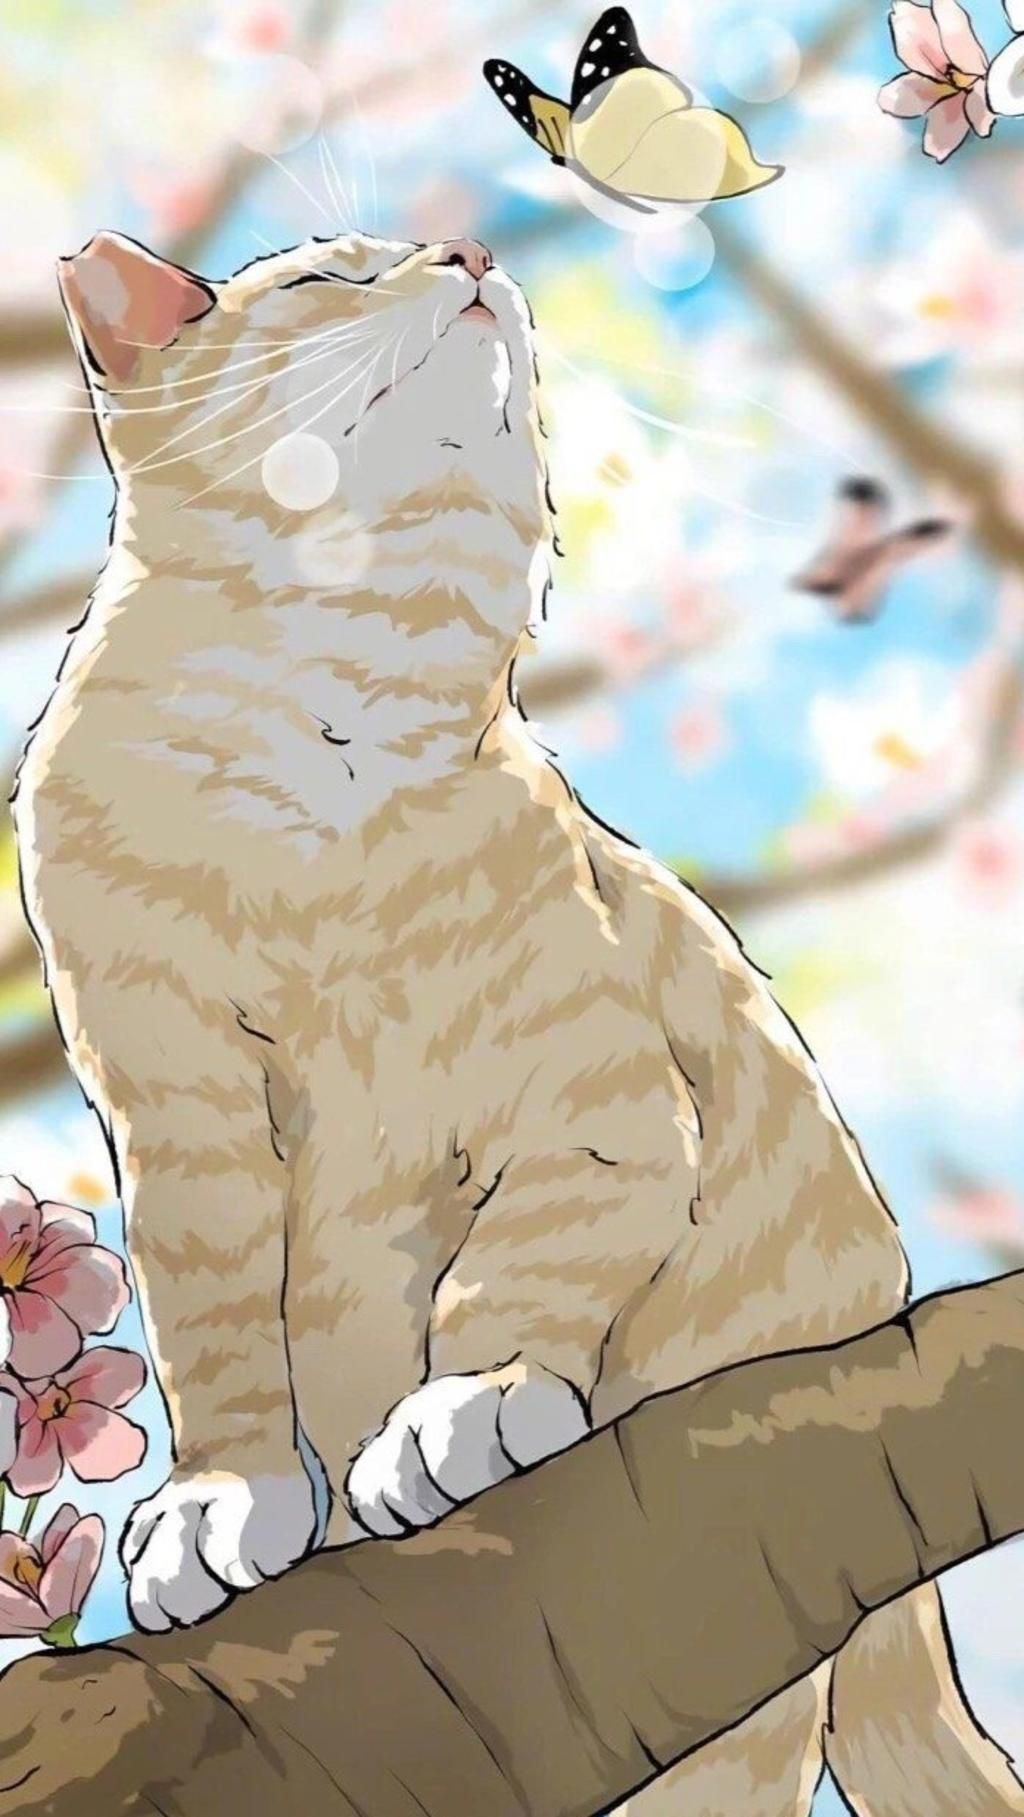 Vẽ mèo anime là một trong những xu hướng mới của giới trẻ hiện nay. Truy cập vào hệ thống ảnh của chúng tôi và khám phá thế giới mèo anime đầy sắc màu, sinh động cùng những biểu cảm đáng yêu và hài hước. Hứa hẹn mang đến cho bạn những giây phút thư giãn và sảng khoái.